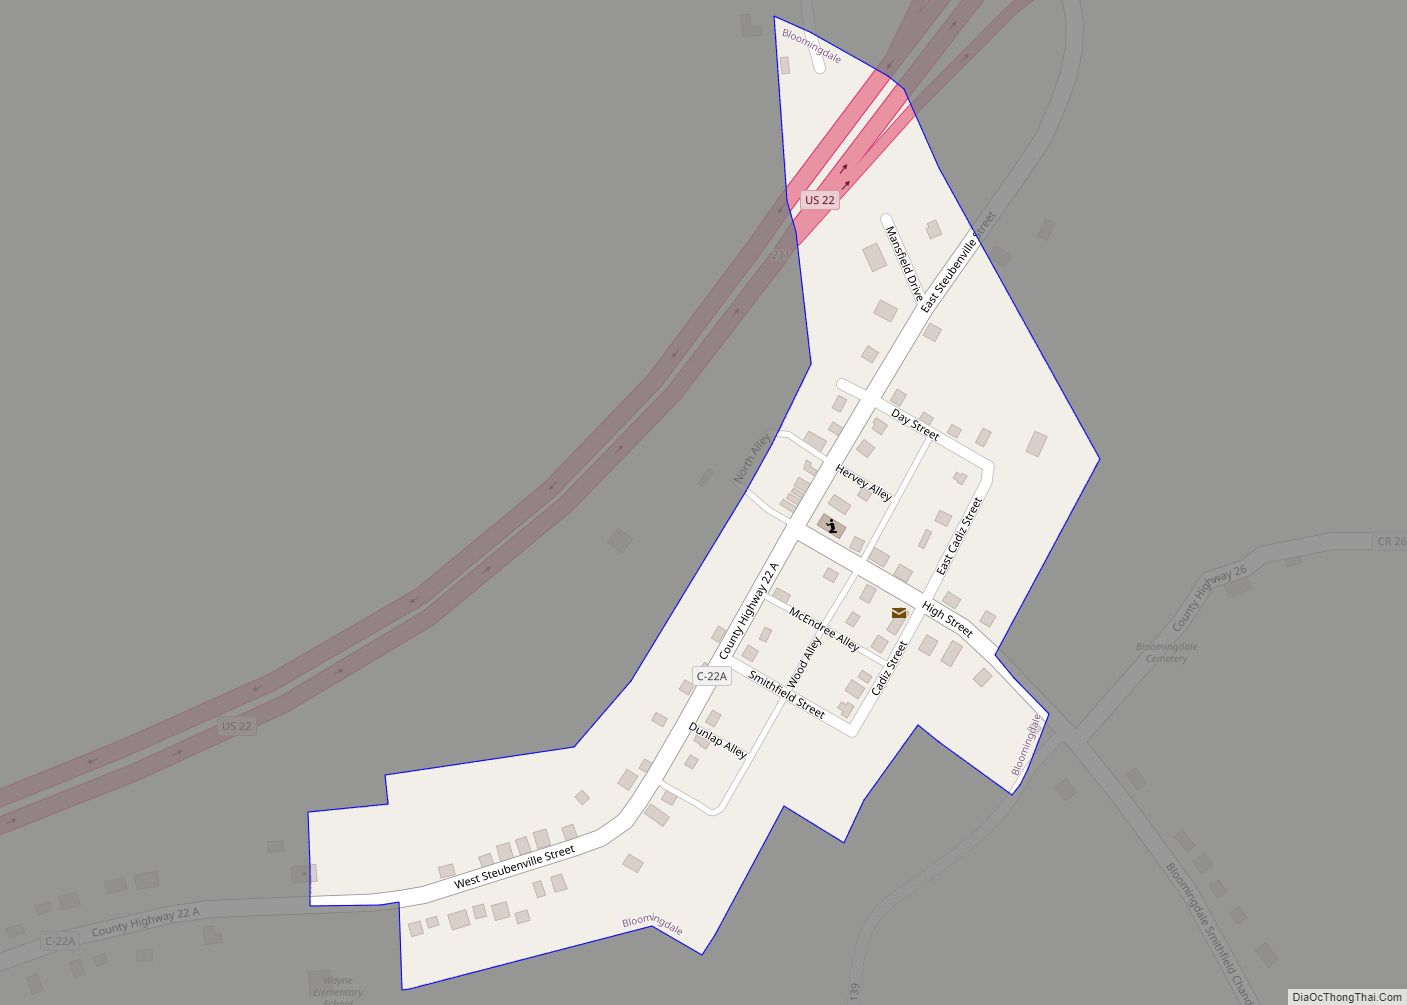 Map of Bloomingdale village, Ohio